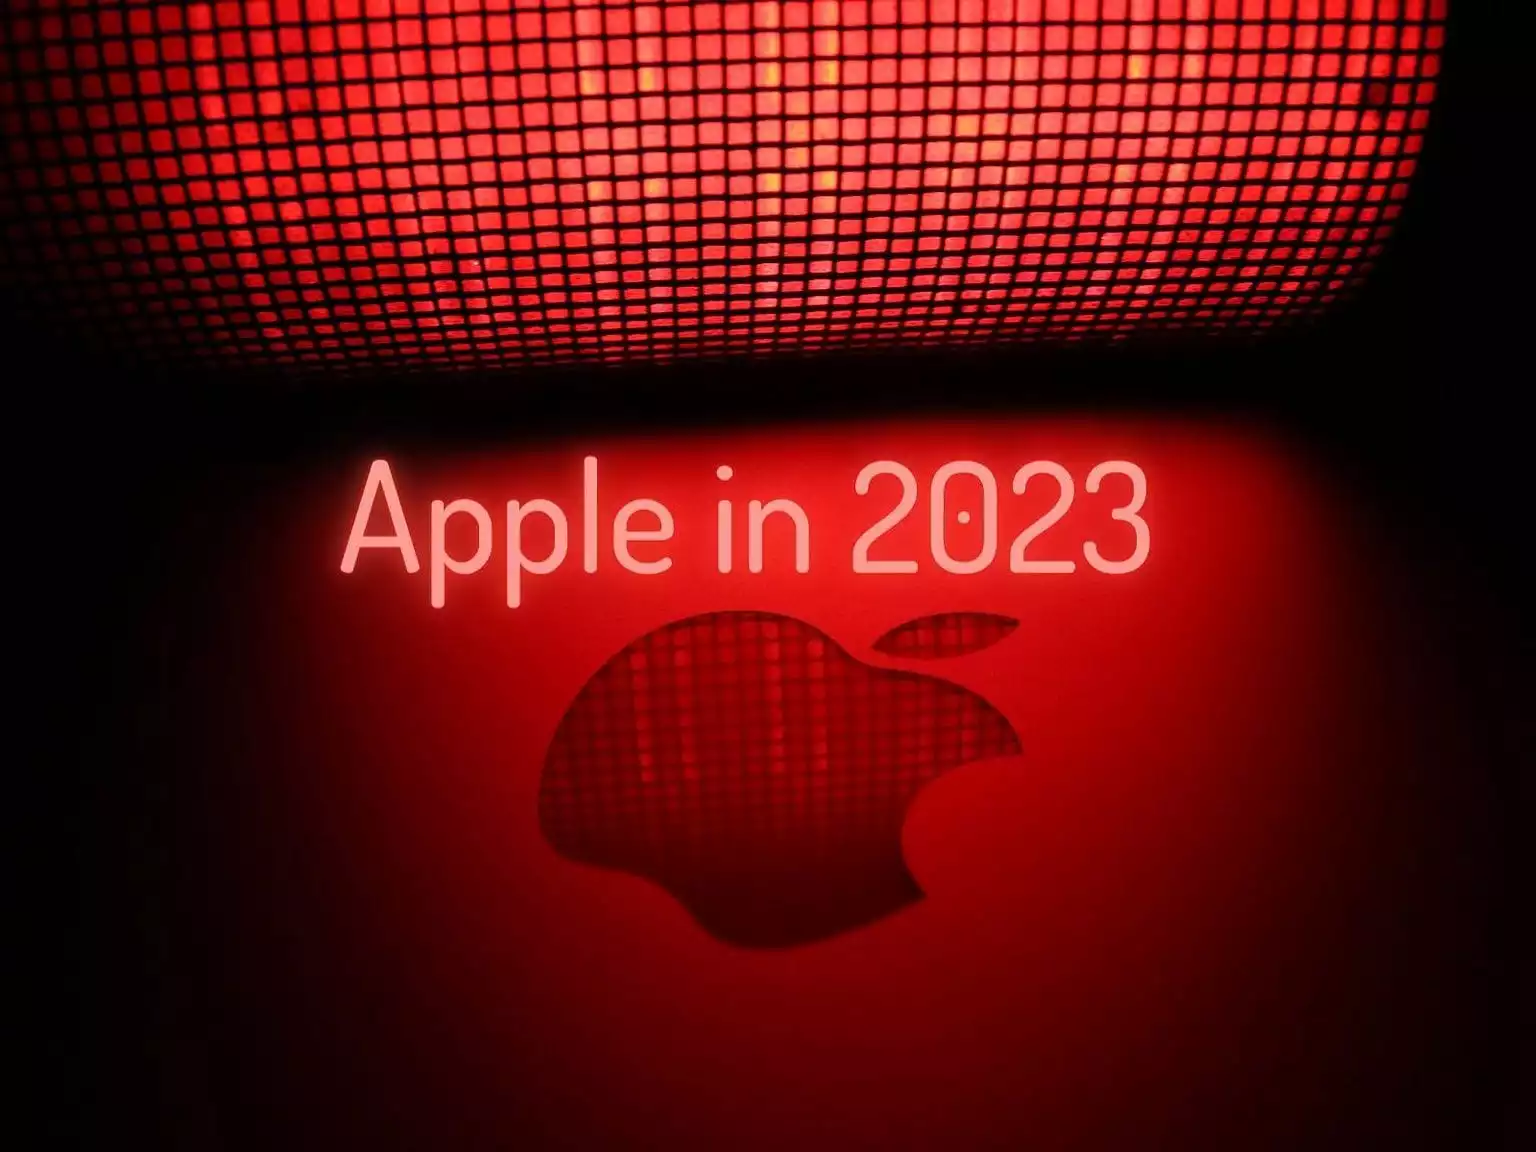 Noile produse Apple care vor aparea in 2023 3